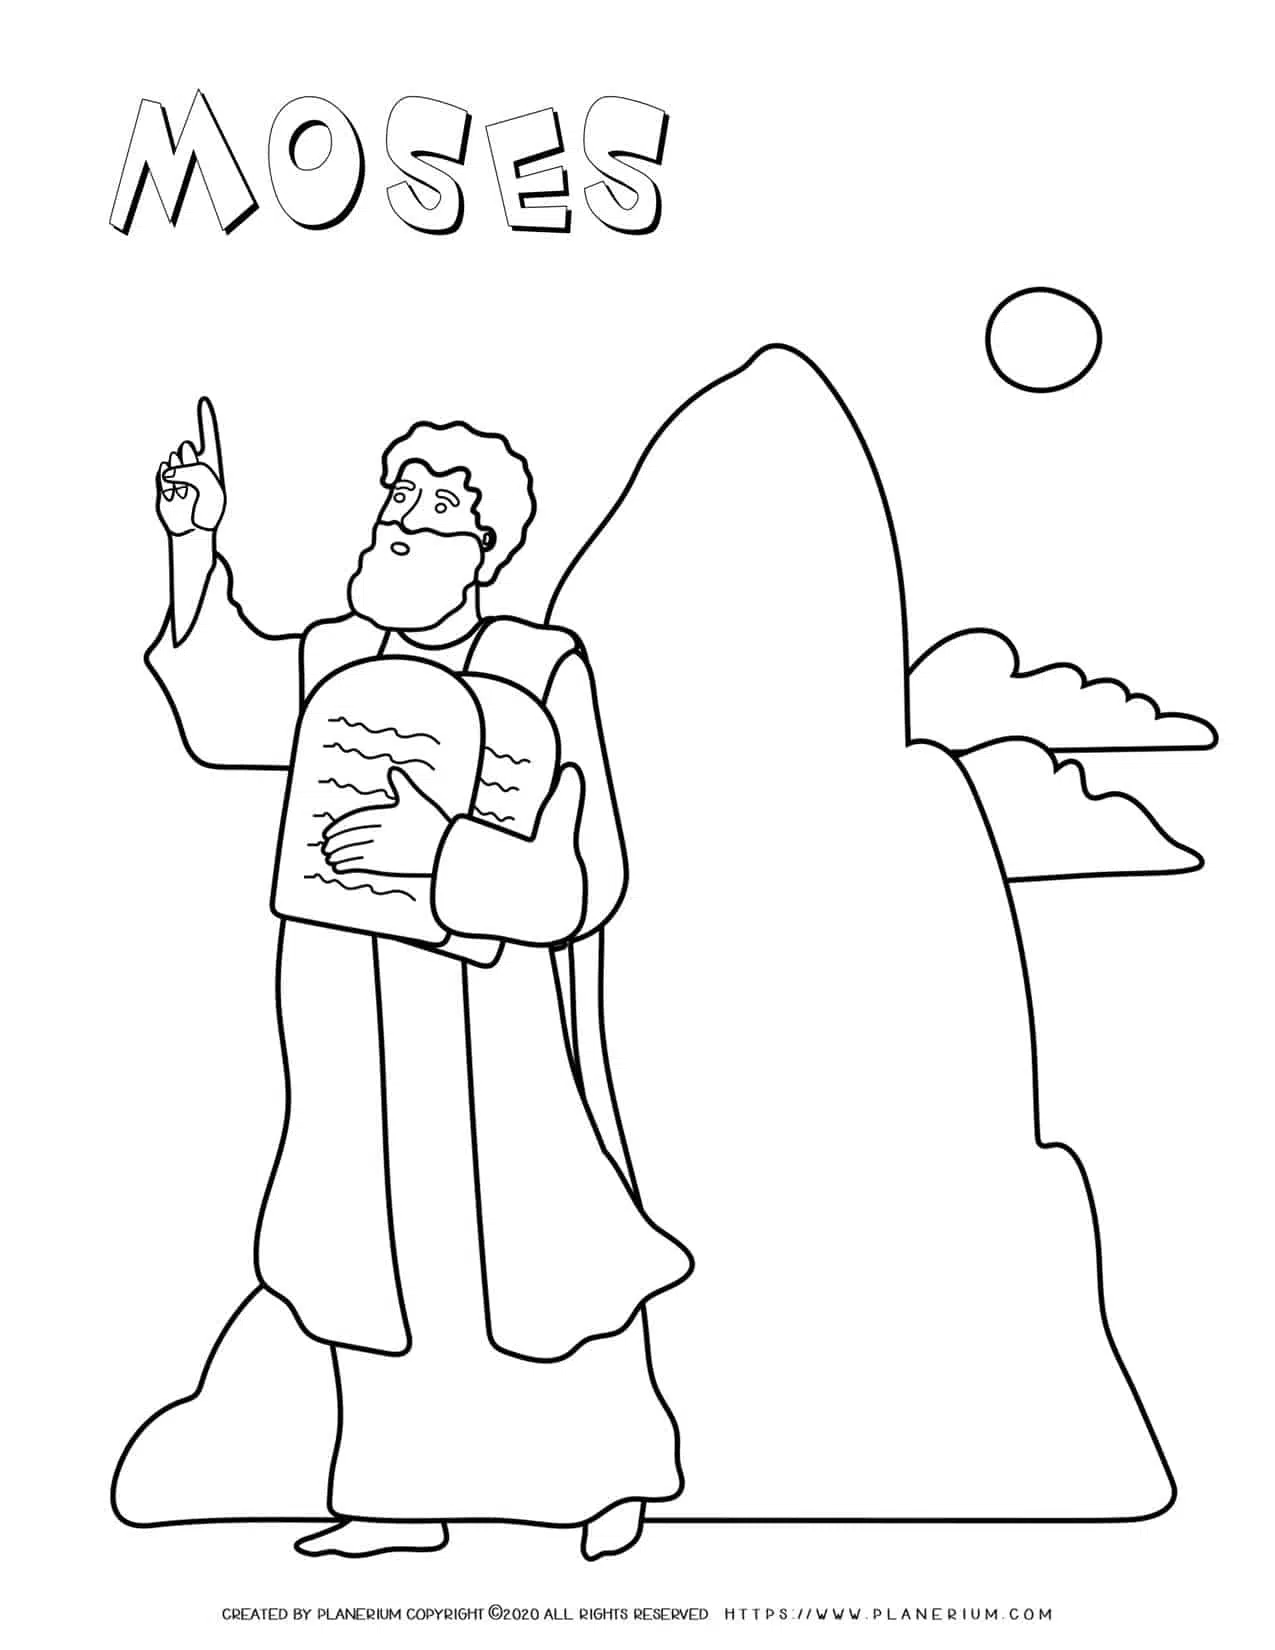 Moses on mount sinai